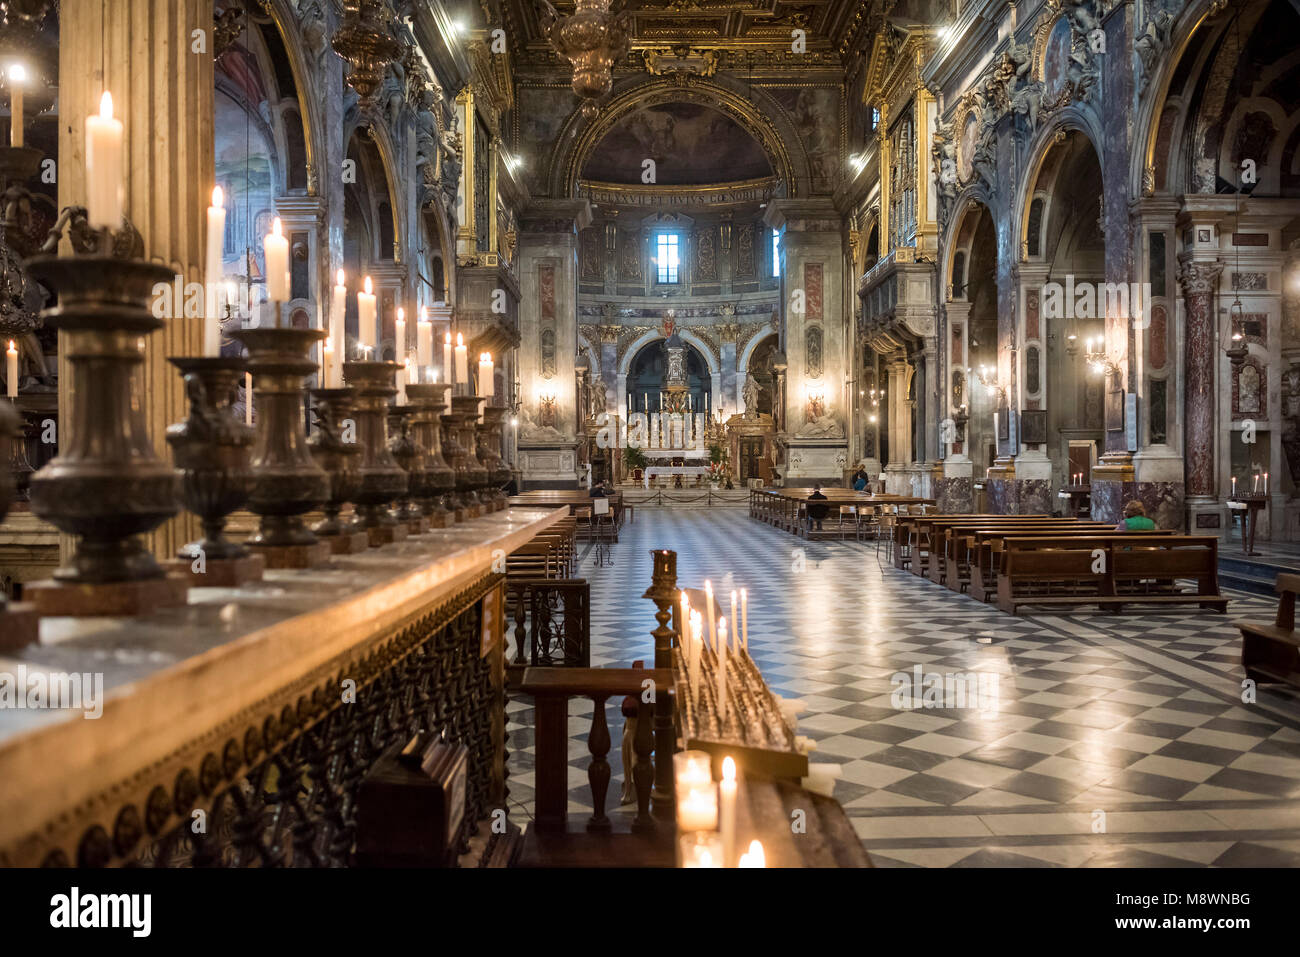 Florencia. Italia. Interior de la Basilica della Santissima Annunziata (Basílica de la Santísima Anunciación). Foto de stock